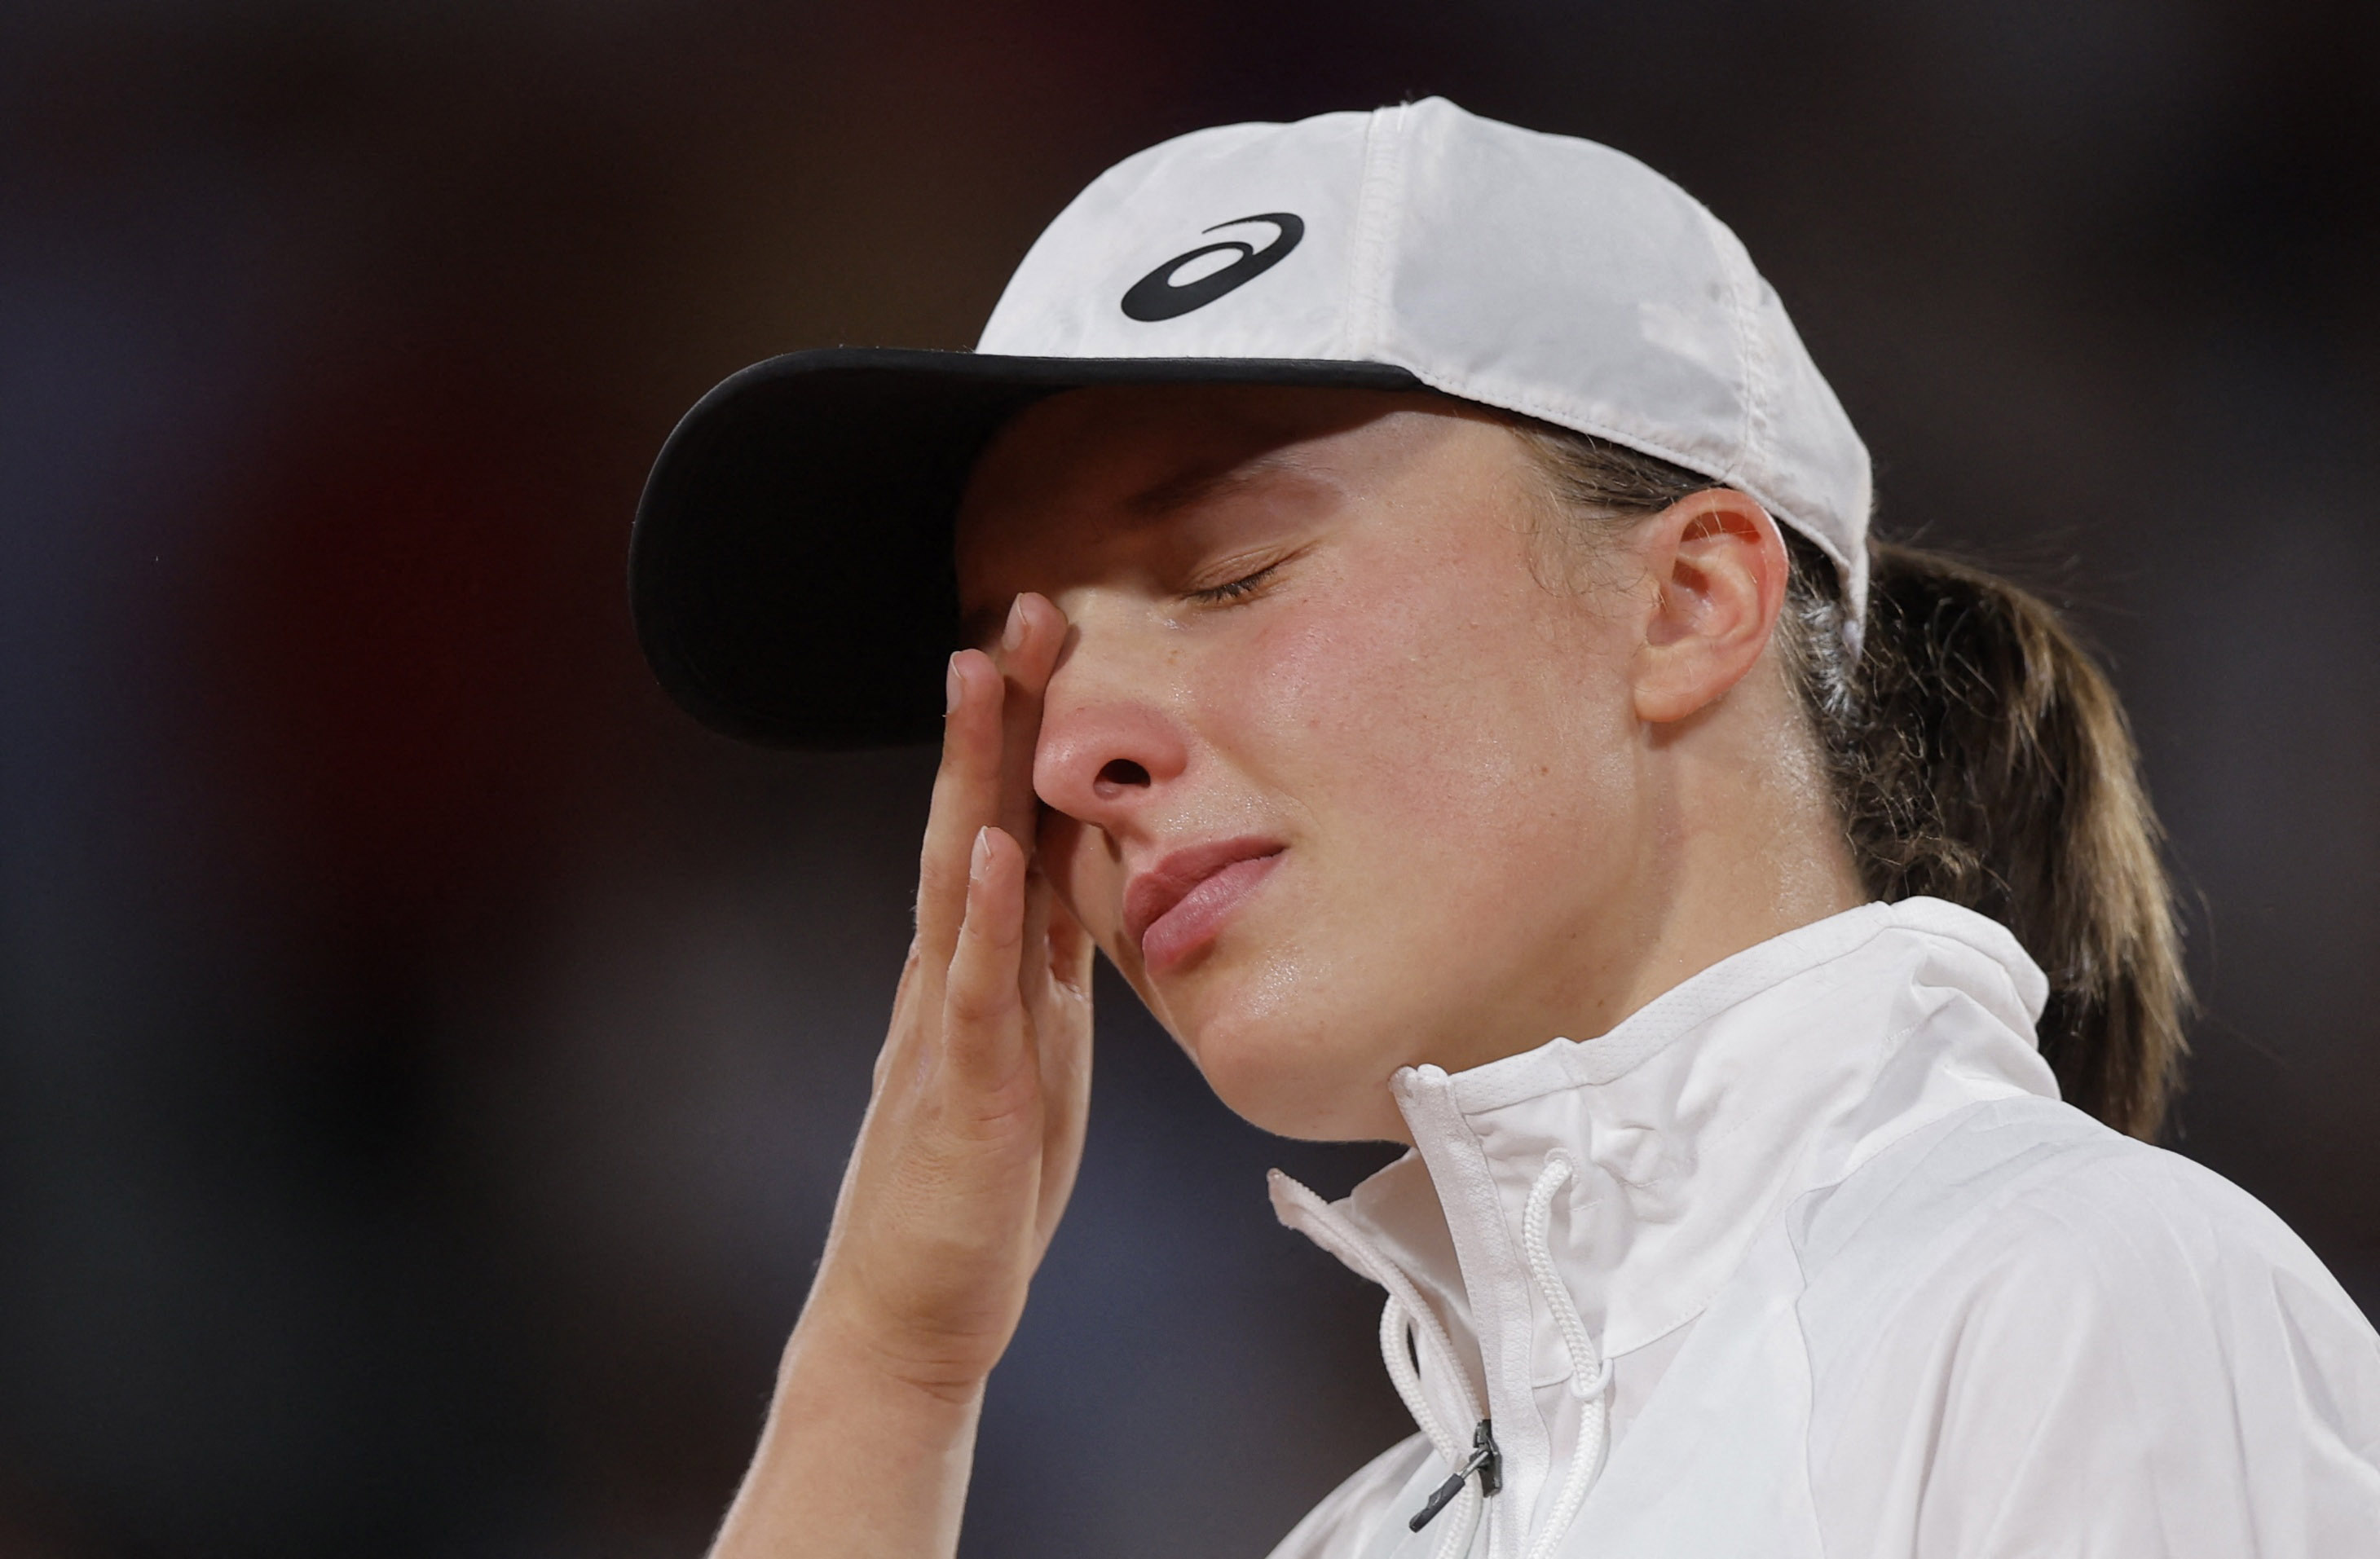 French Open champion Swiatek is 'overwhelmed' by Lewandowski support